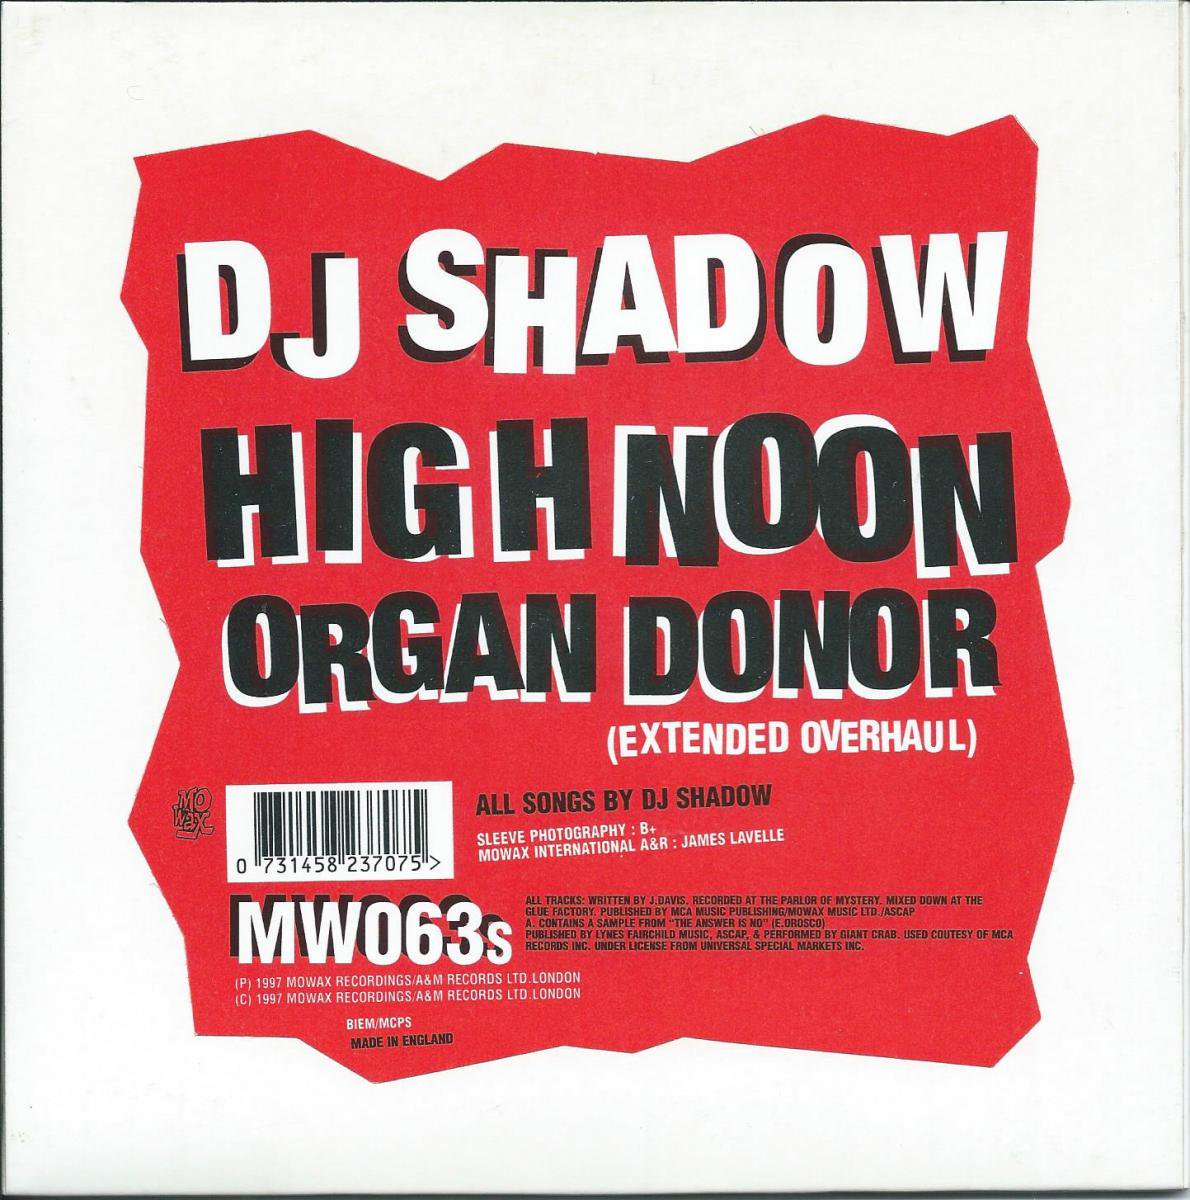 DJ SHADOW HIGH NOON ORGAN DONOR 7インチレコード - 洋楽